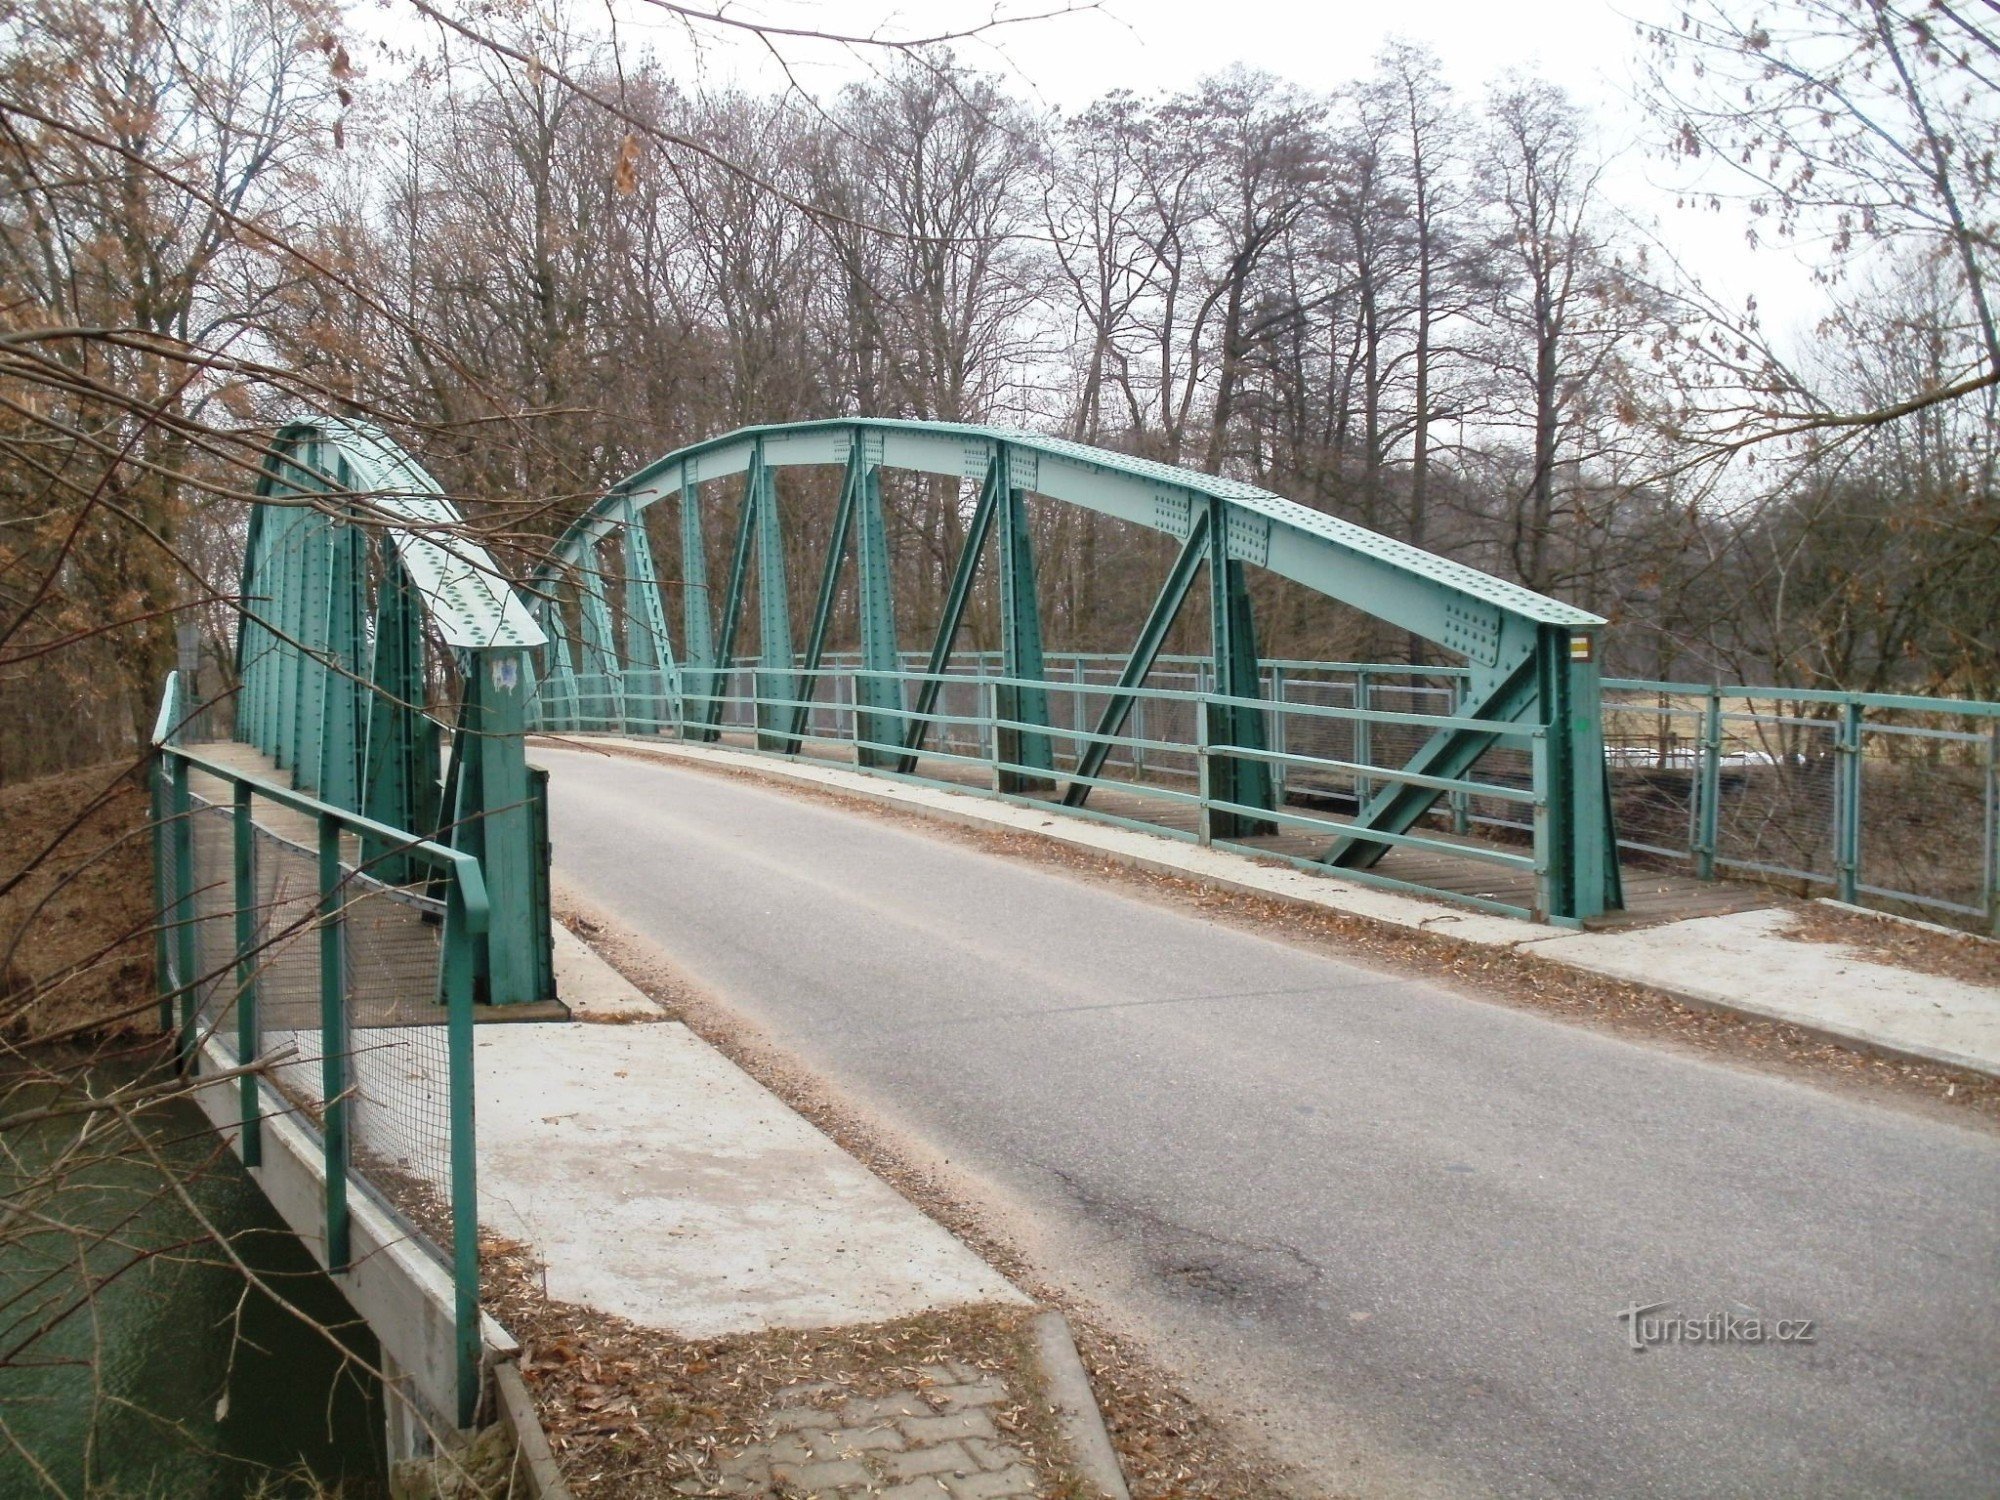 Lochenice - ponte di ferro